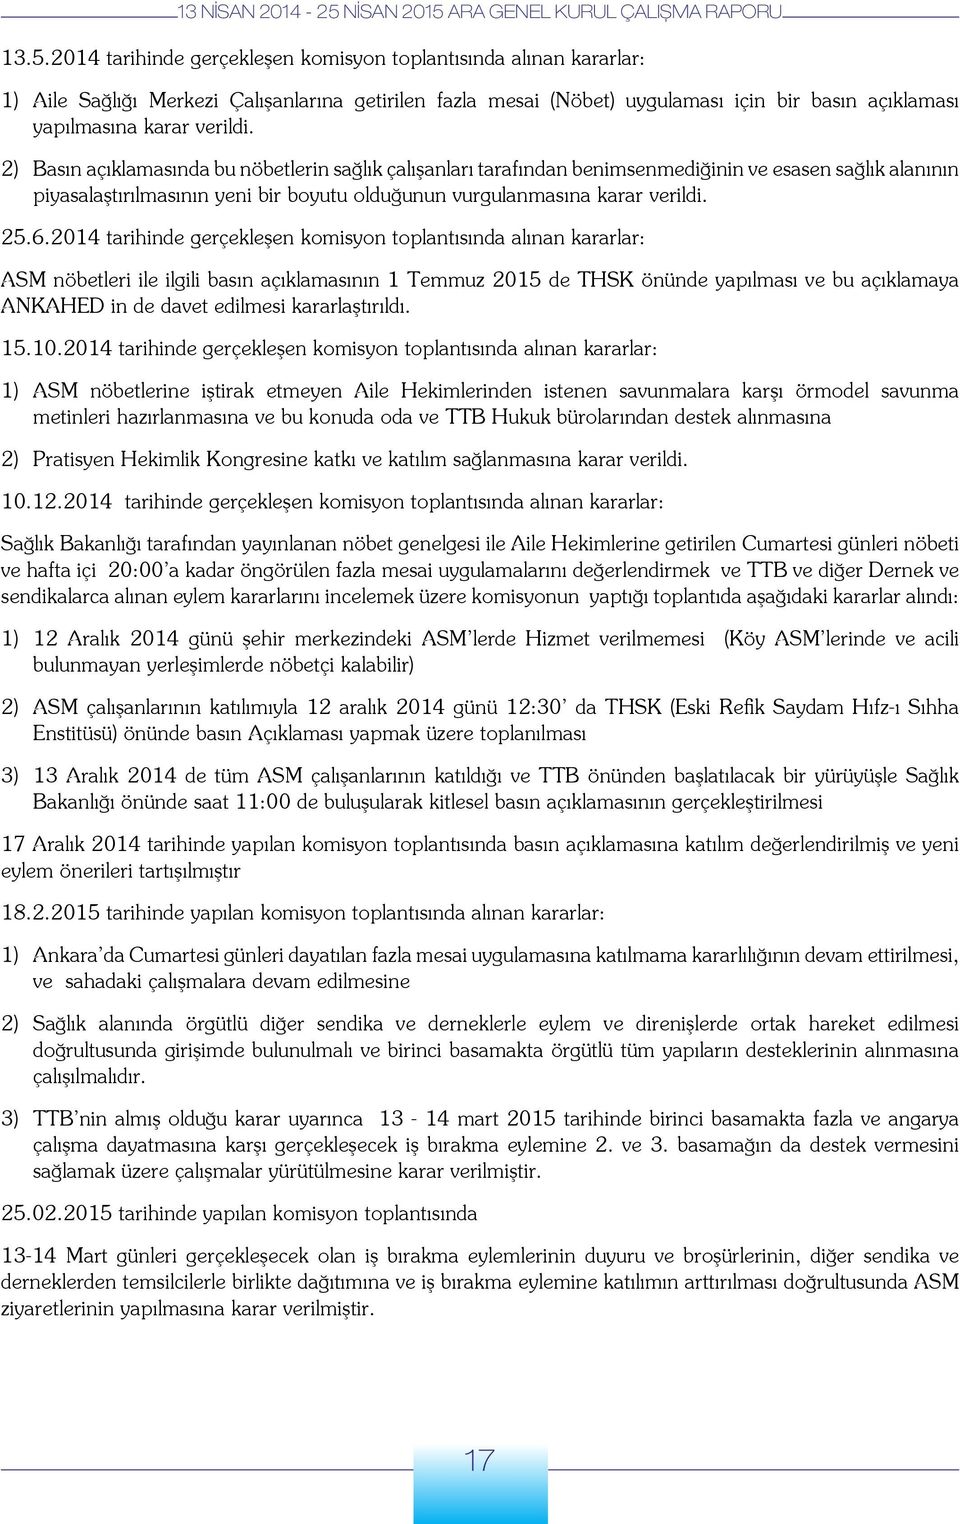 25.6.2014 tarihinde gerçekleşen komisyon toplantısında alınan kararlar: ASM nöbetleri ile ilgili basın açıklamasının 1 Temmuz 2015 de THSK önünde yapılması ve bu açıklamaya ANKAHED in de davet